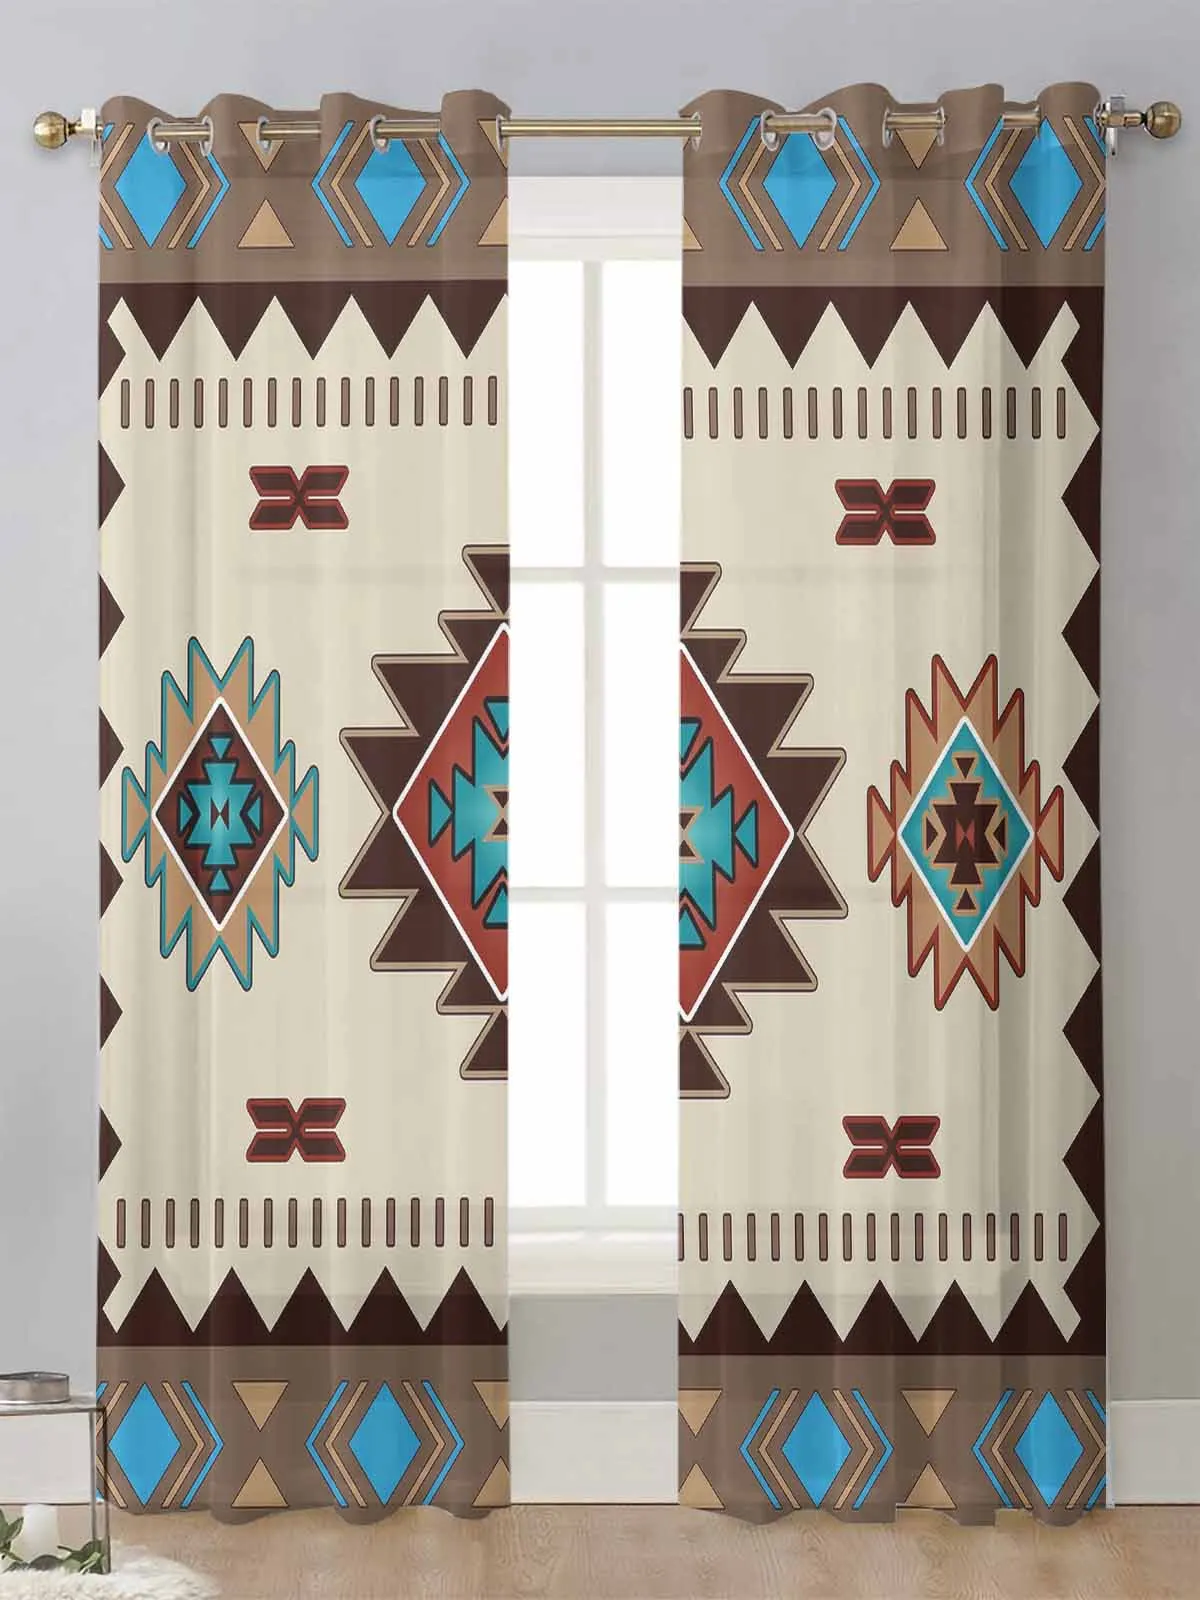 

Индийские геометрические графические прозрачные шторы для гостиной, прозрачные тюлевые занавески из вуали, занавески, домашний декор